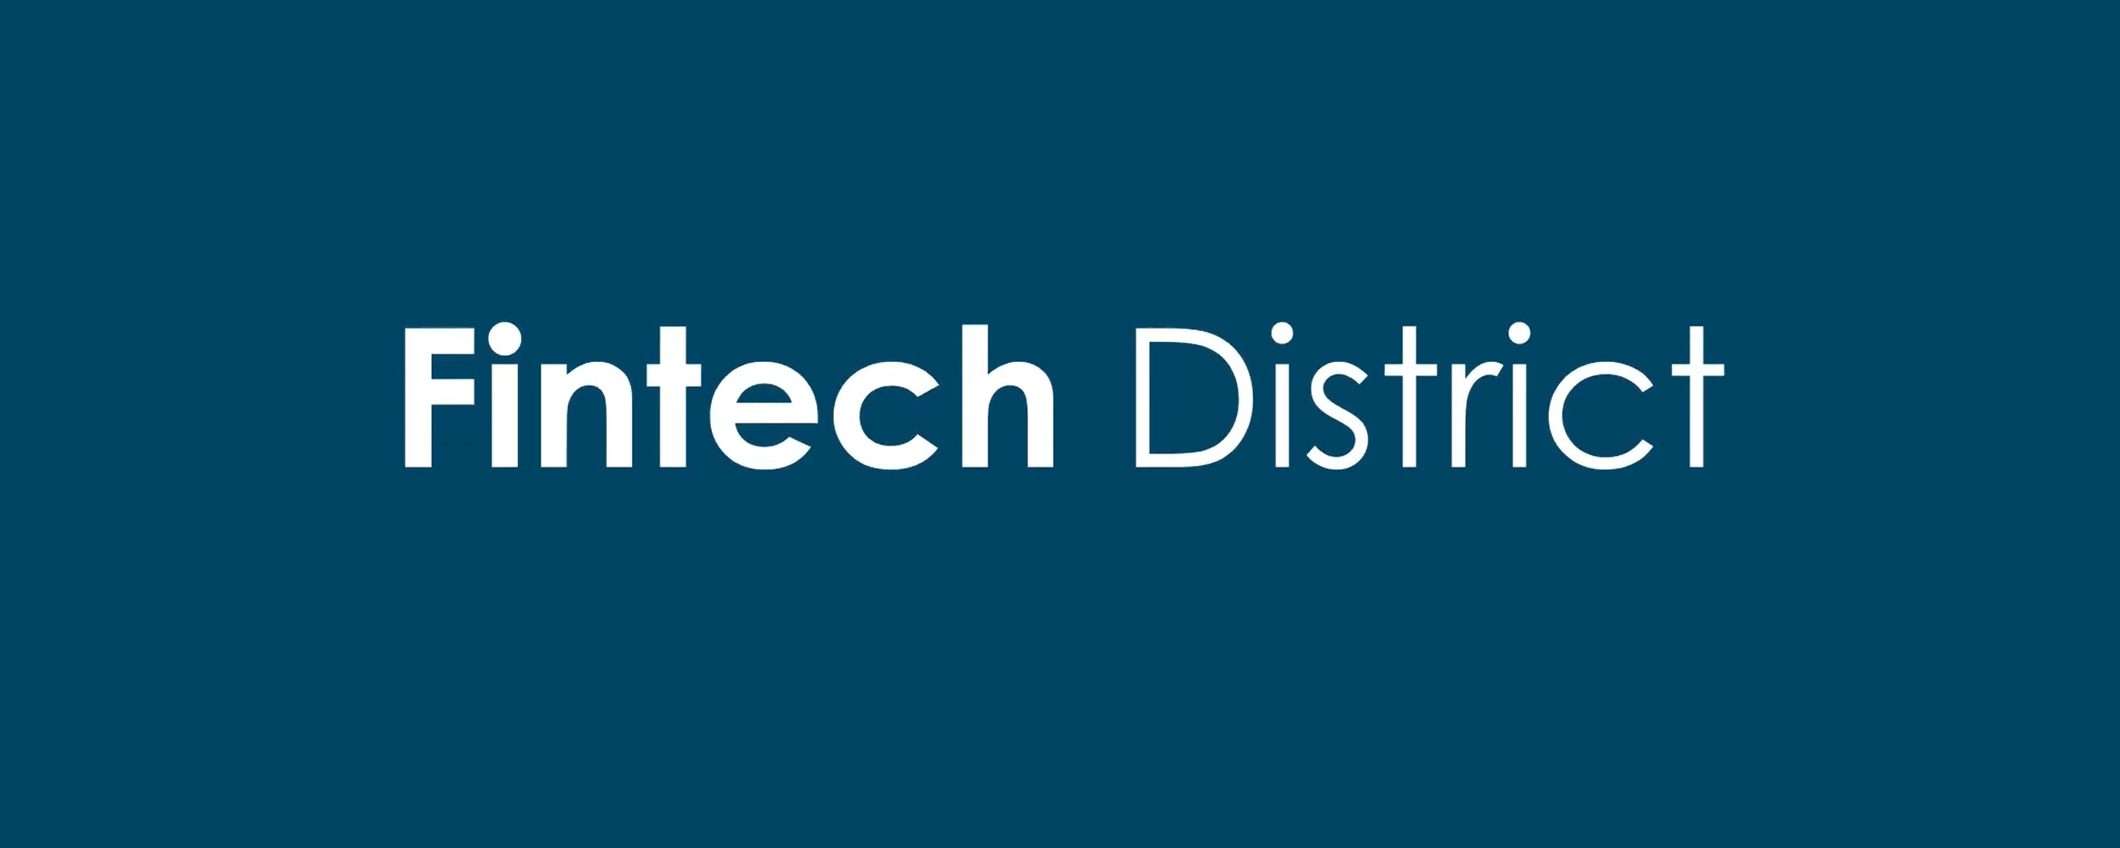 Fintech District, punto di riferimento del settore